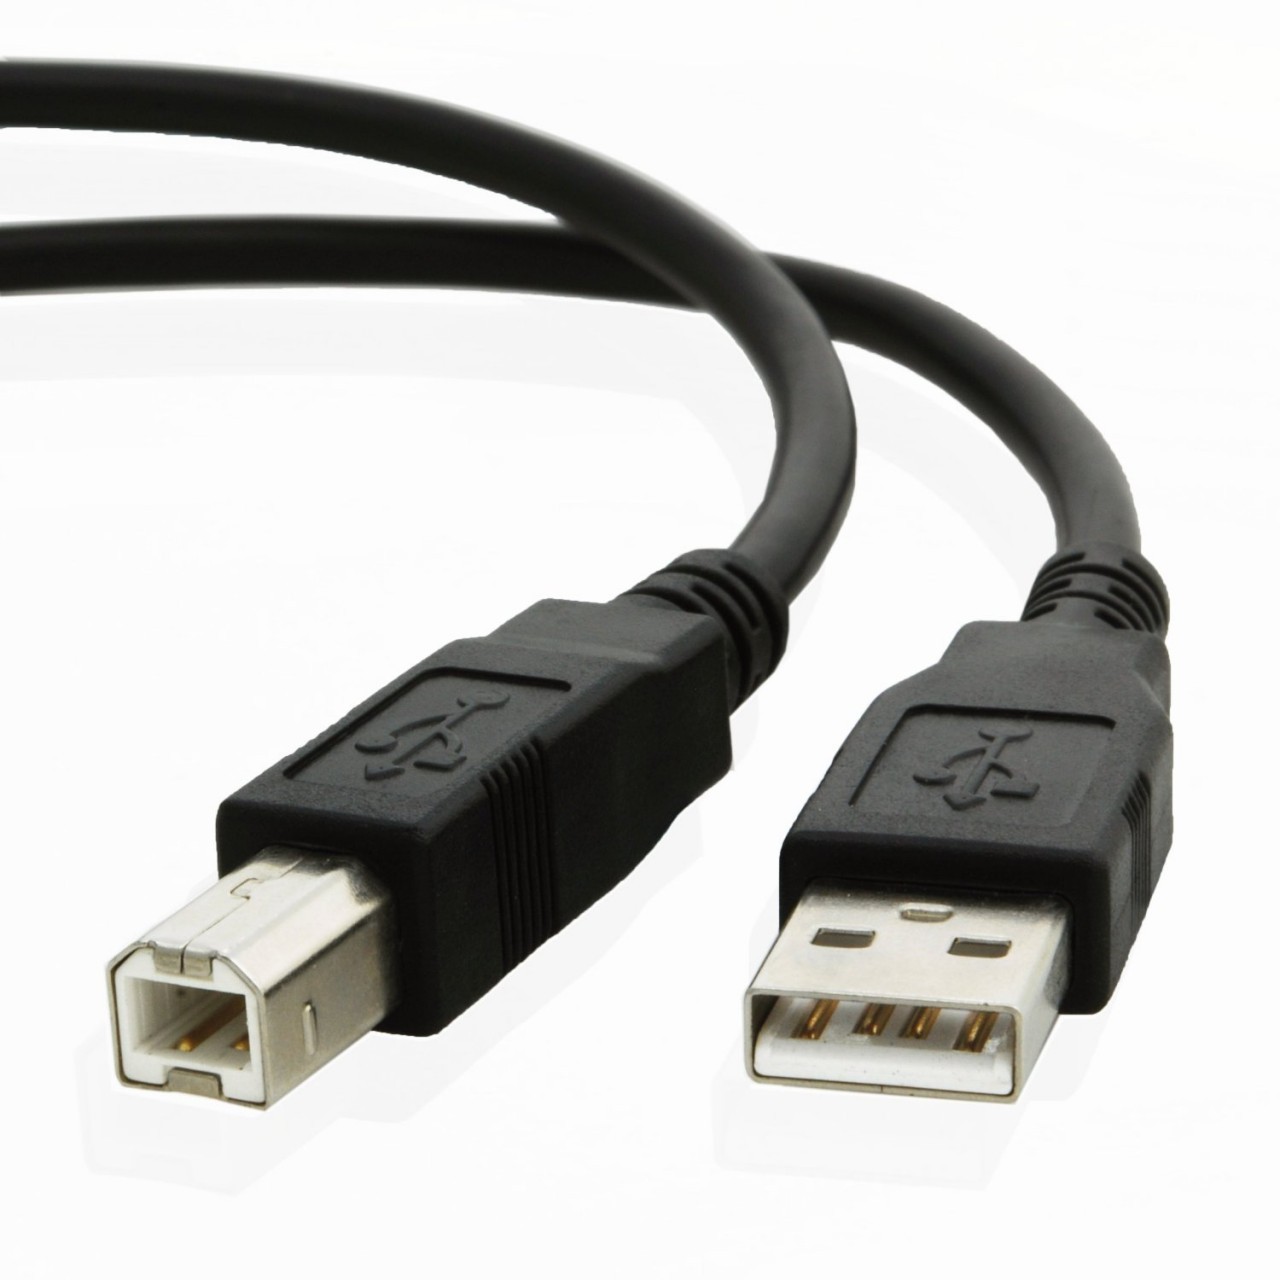 USB Printer Cable Image